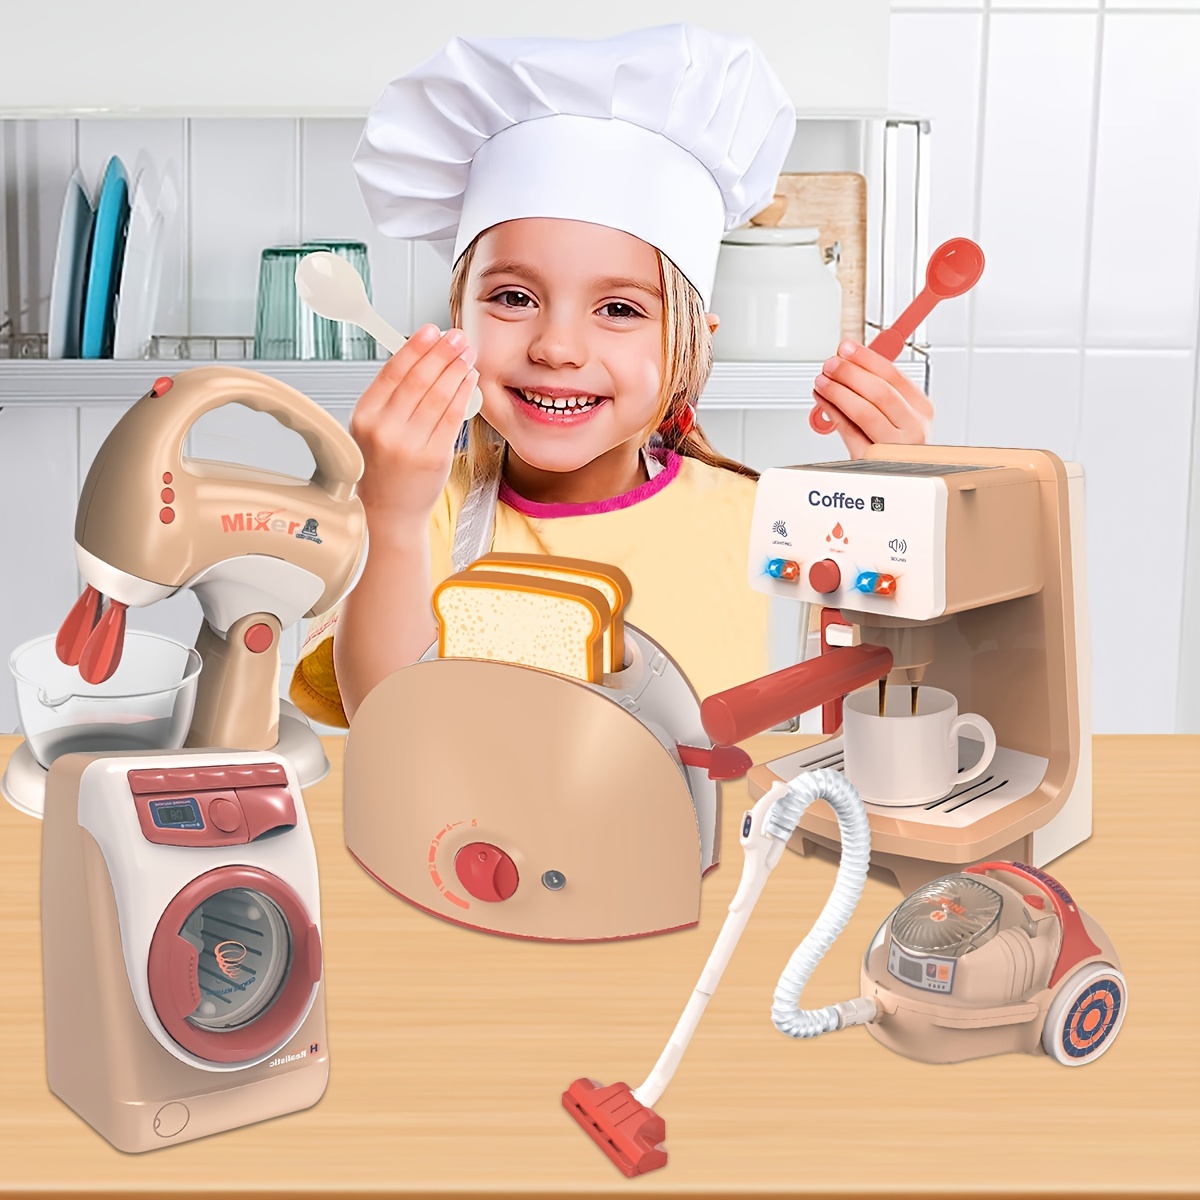  Kitchen Appliances Toy,Kids Kitchen Pretend